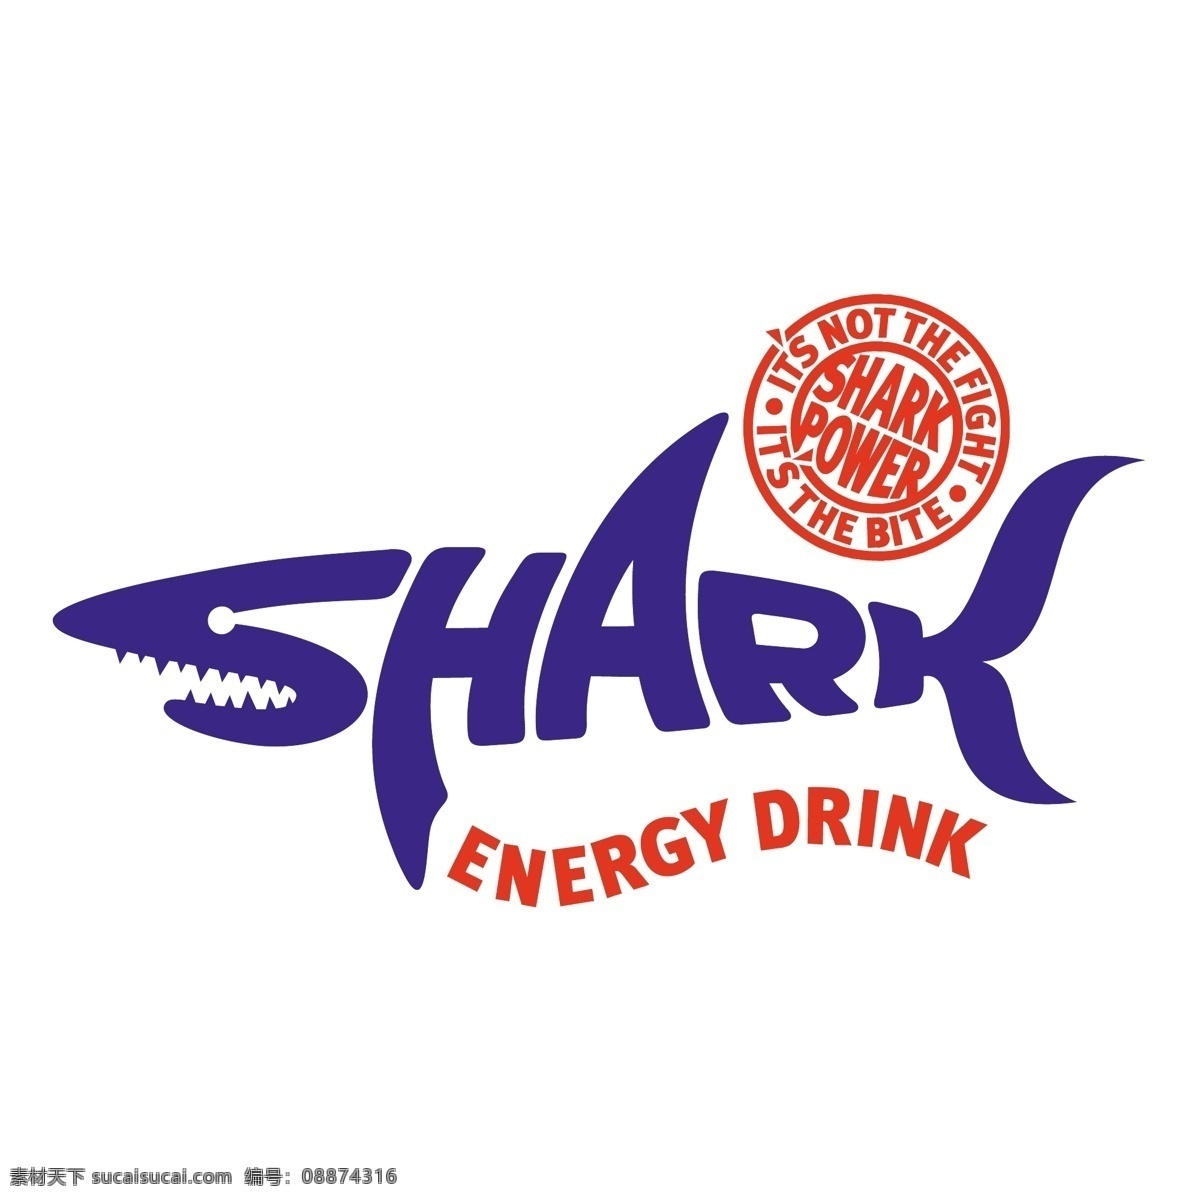 鲨鱼 鲨鱼的能量 能量 能量饮料 饮料 向量 载体 饮料水 水 插图 背景 下 能源 白色